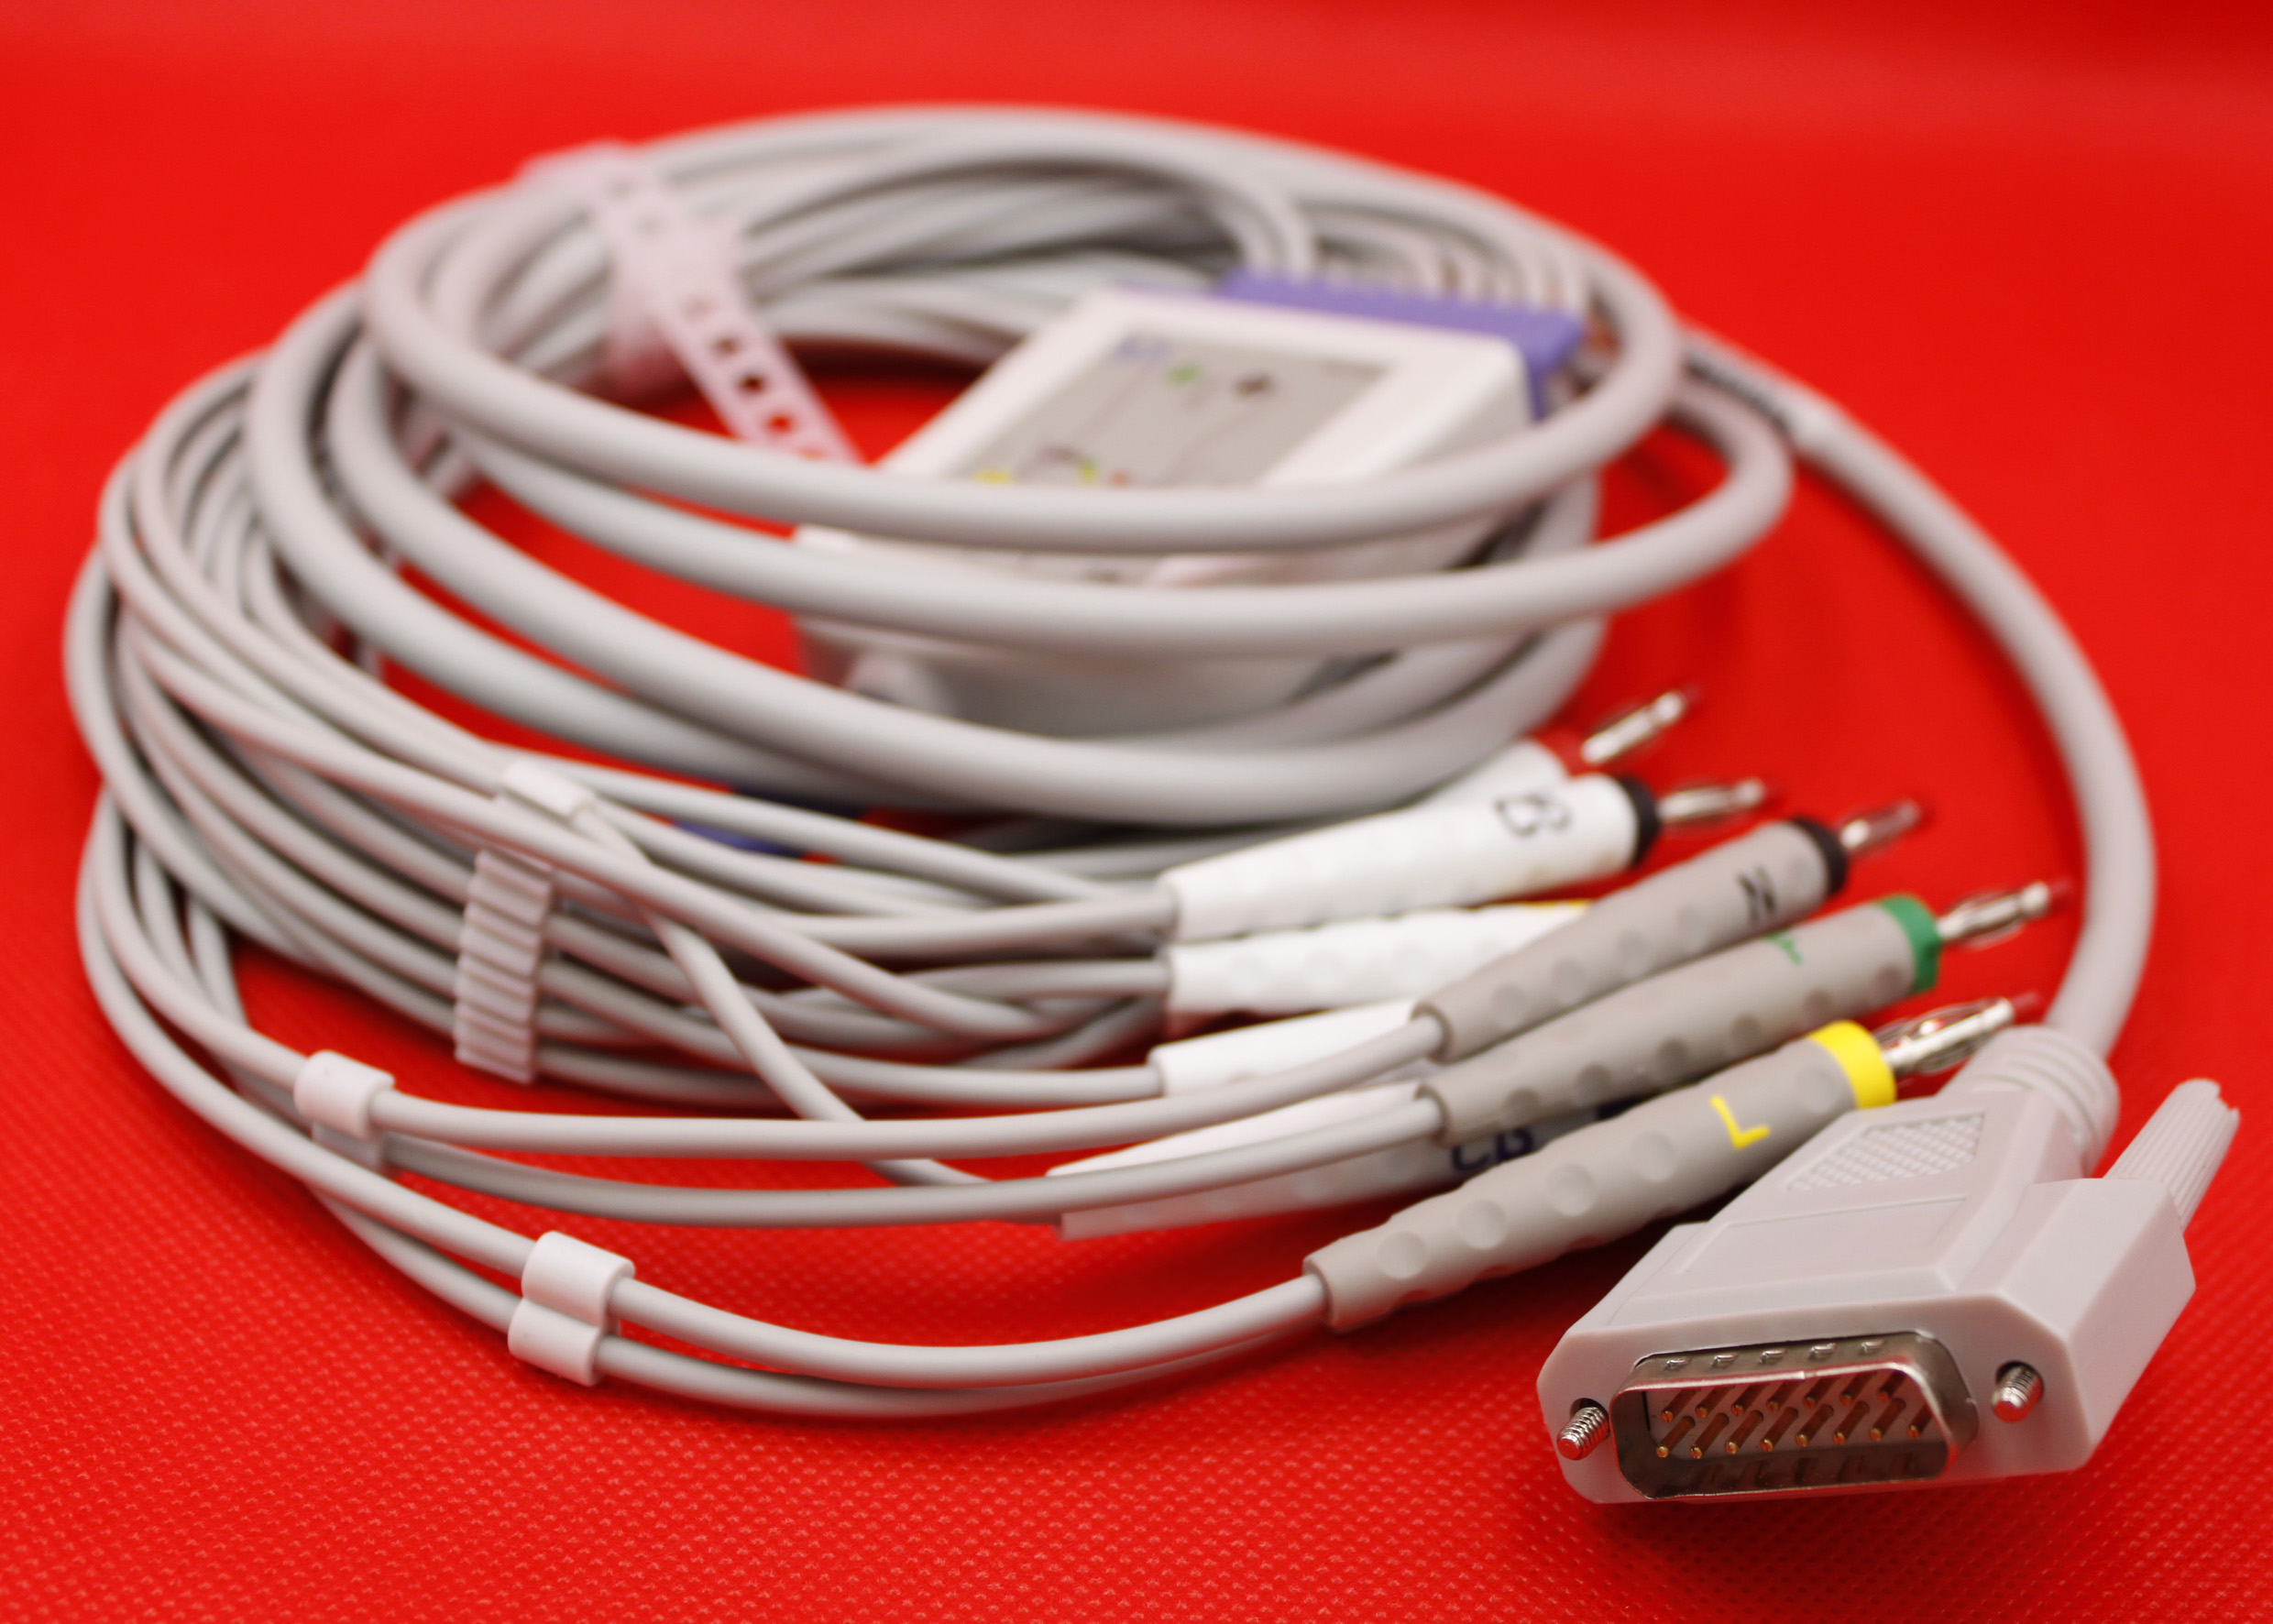 ЭКГ кабель пациента для BTL BTL-08 LC, BTL-08 LT, BTL-08-SD ECG, BTL-08 МТ Plus, BTL-08 MD SPIRO, штекер banana 4мм, IEC